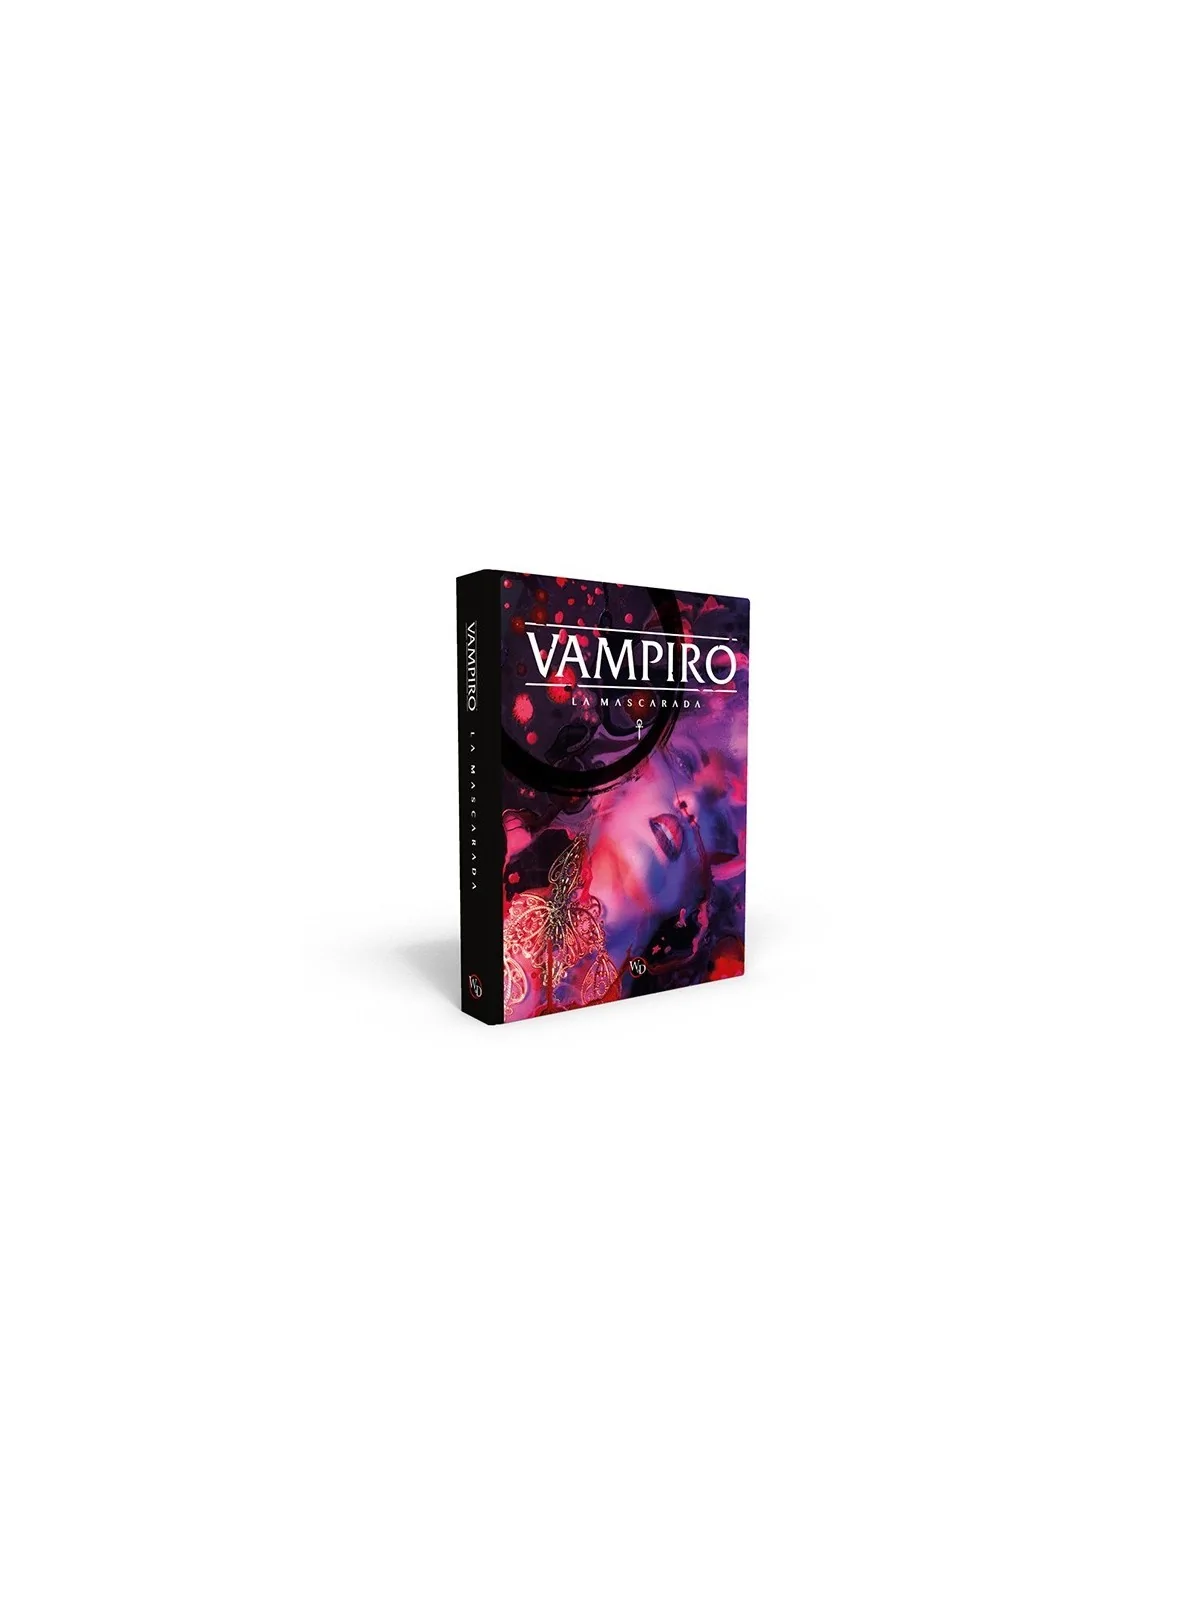 Comprar Vampiro: La Mascarada 5ª Edición barato al mejor precio 47,49 